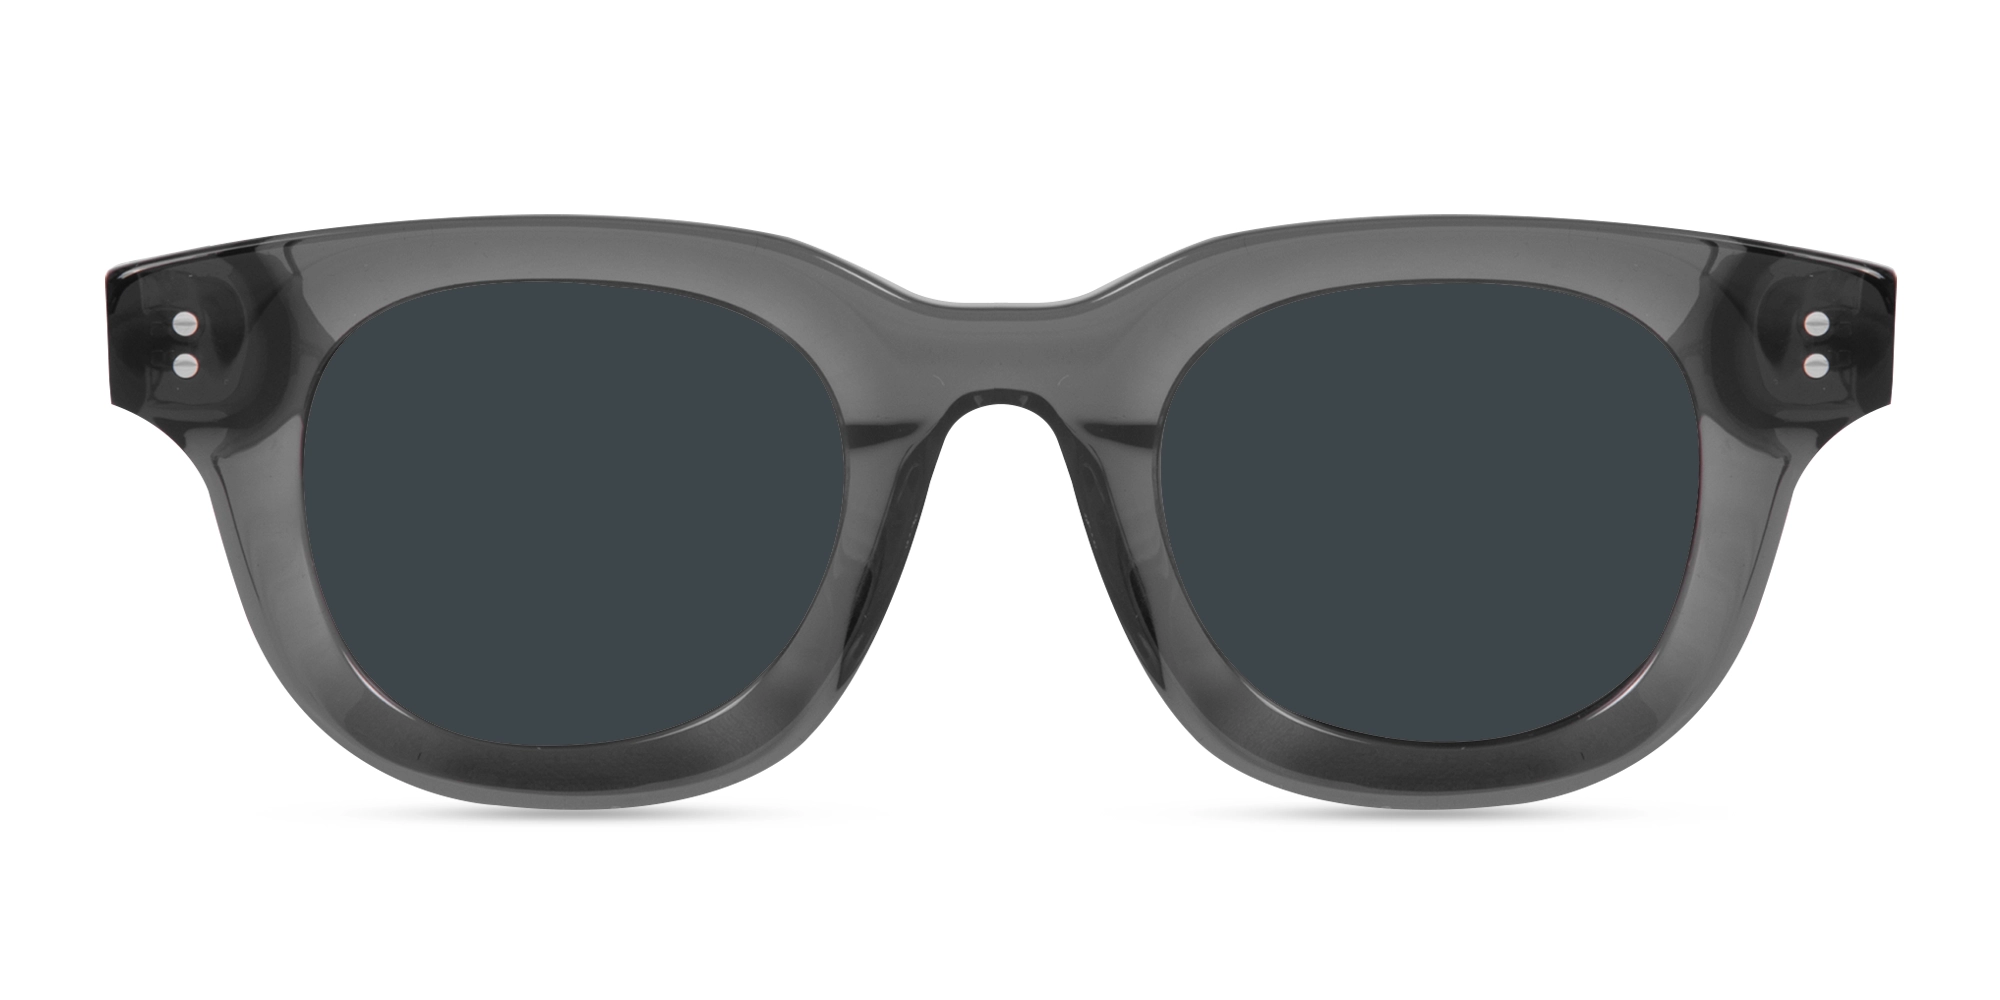 Sunglasses Grey Frame